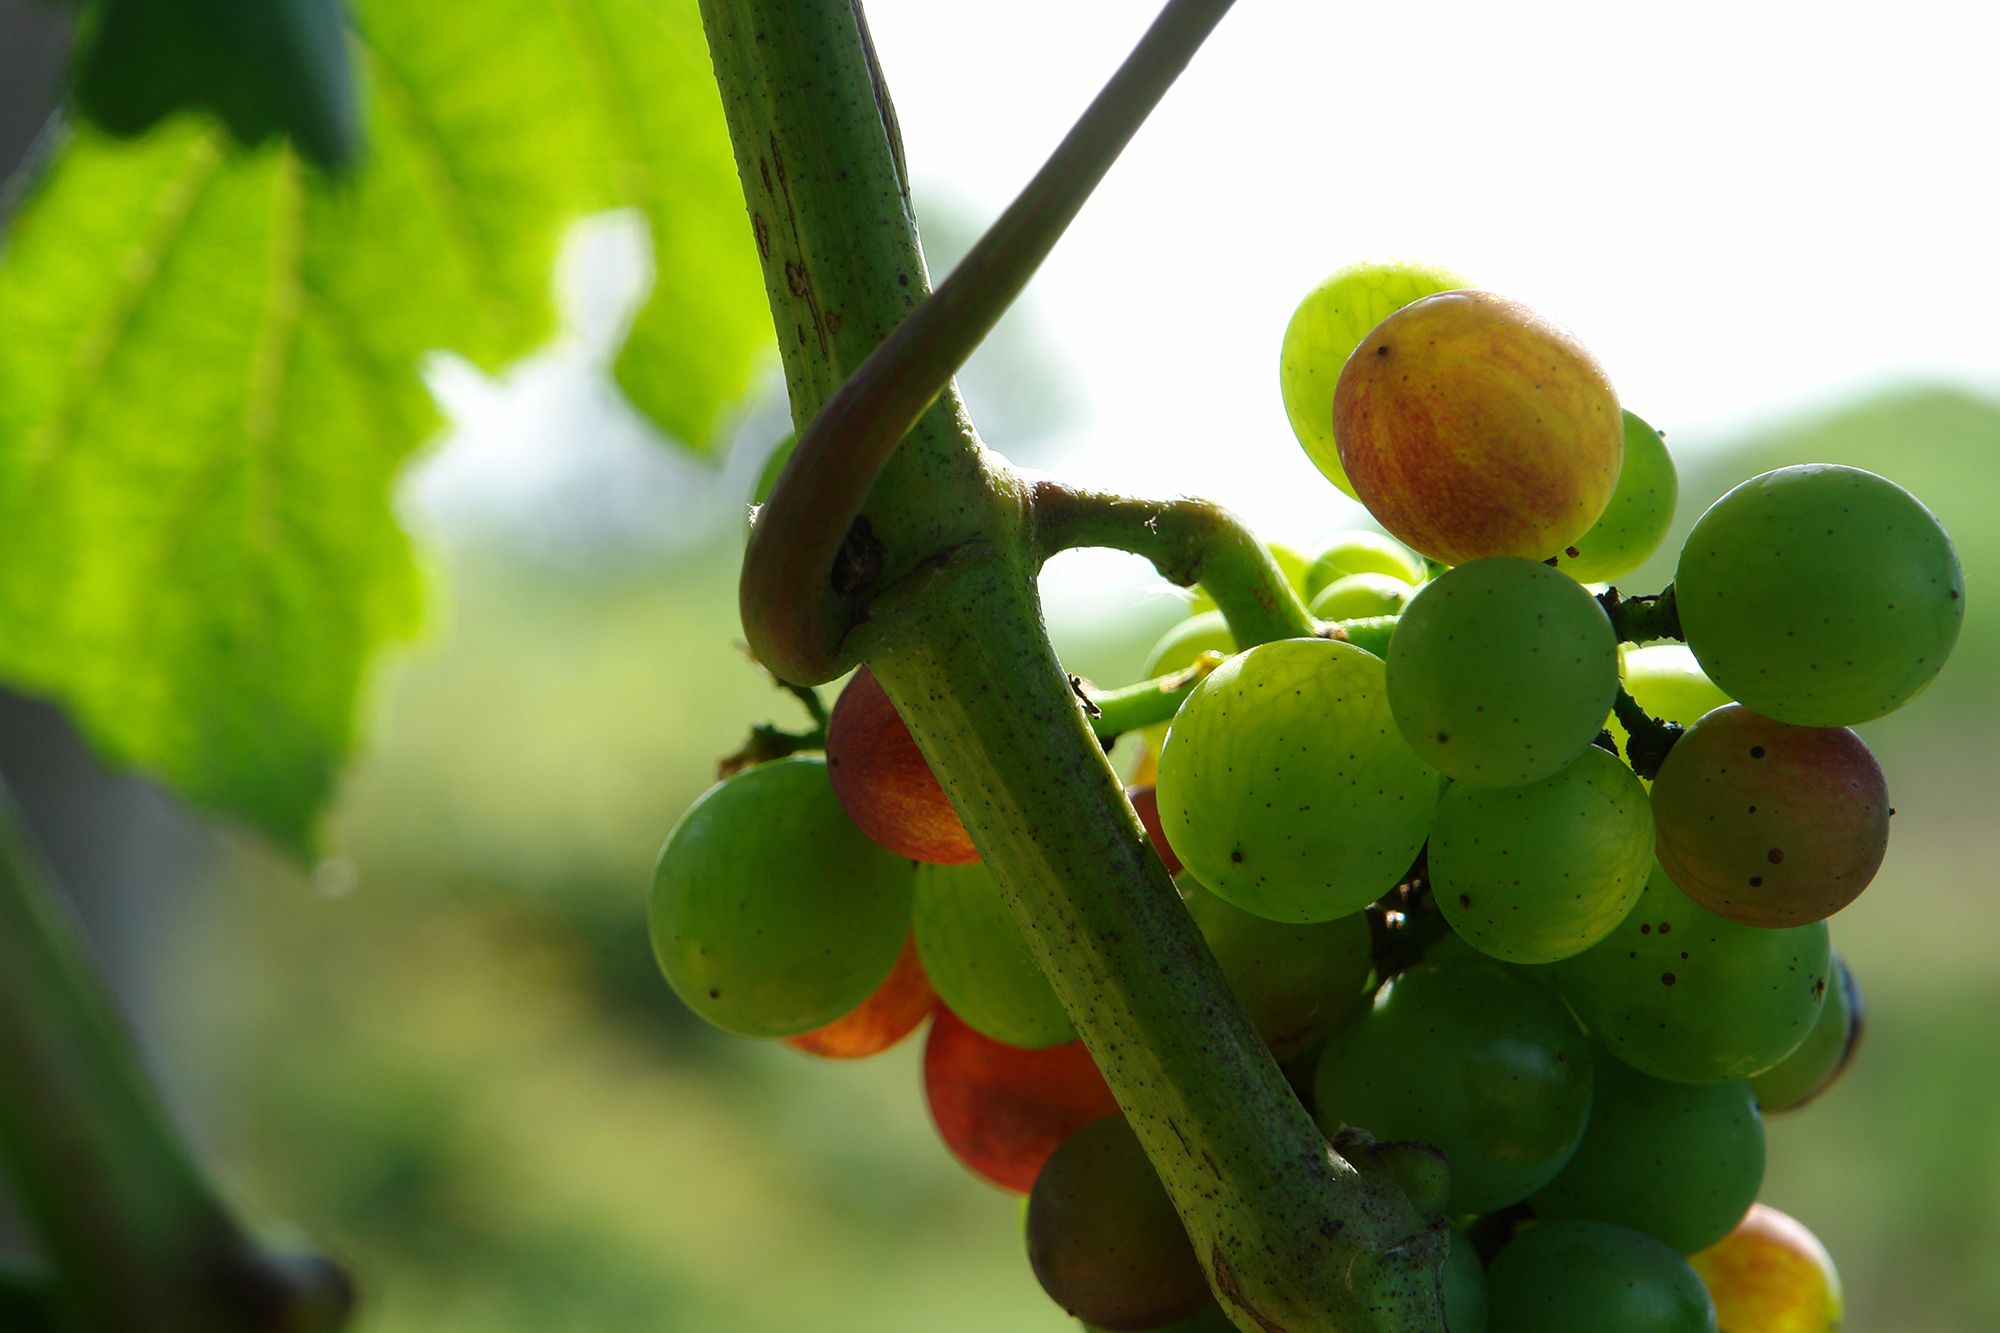 ヴェレゾン（色づき）が始まった甲州。甲州から造られるのは原則として白ワインだが、じつは果皮の色は紫色をしている。